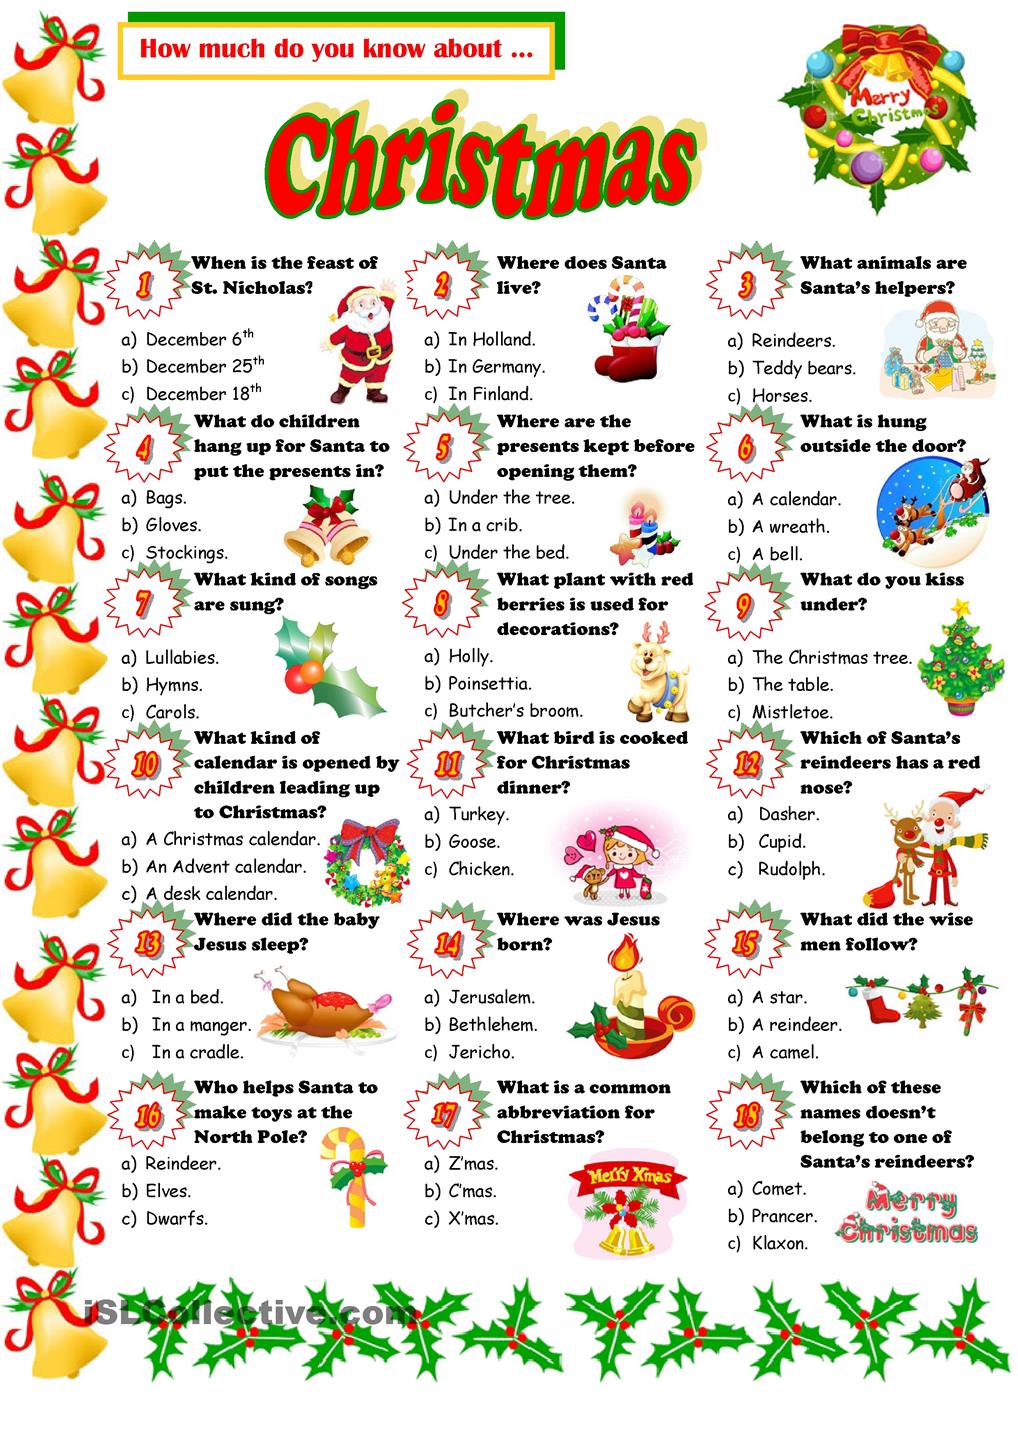 Christmas Trivia Games Free Printable